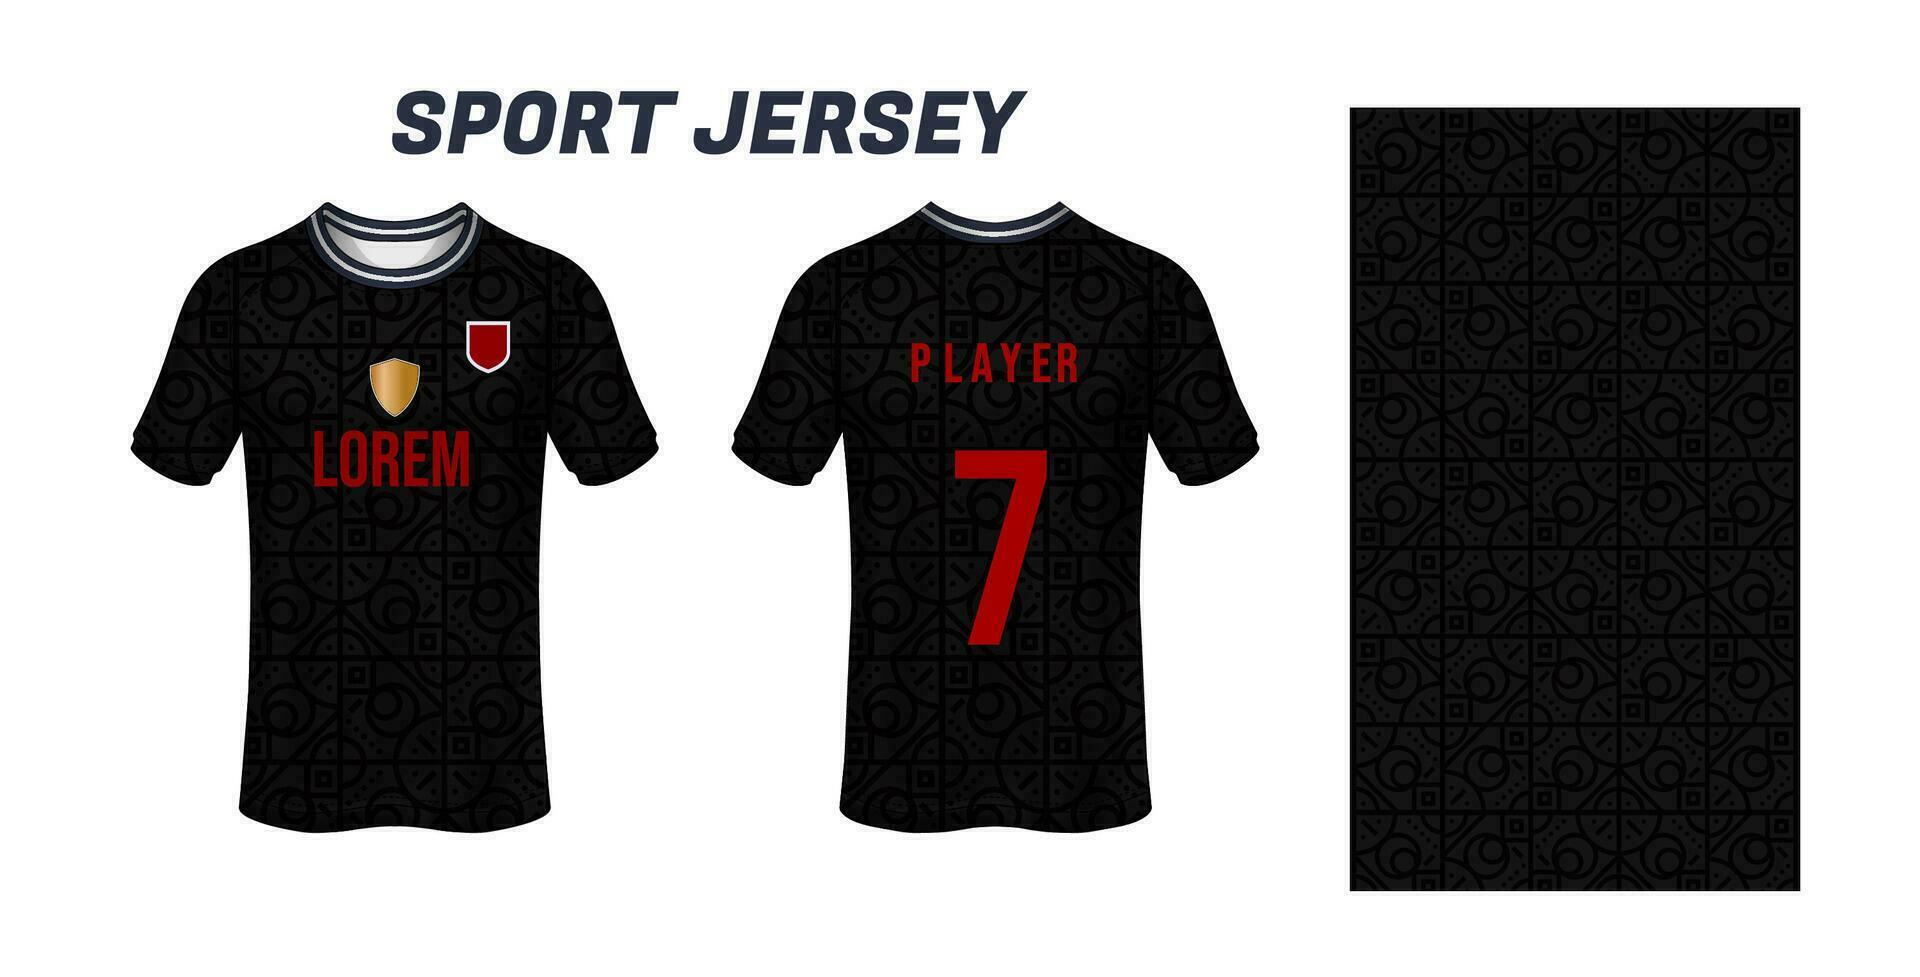 sport Jersey ontwerp kleding stof textiel voor sublimatie vector